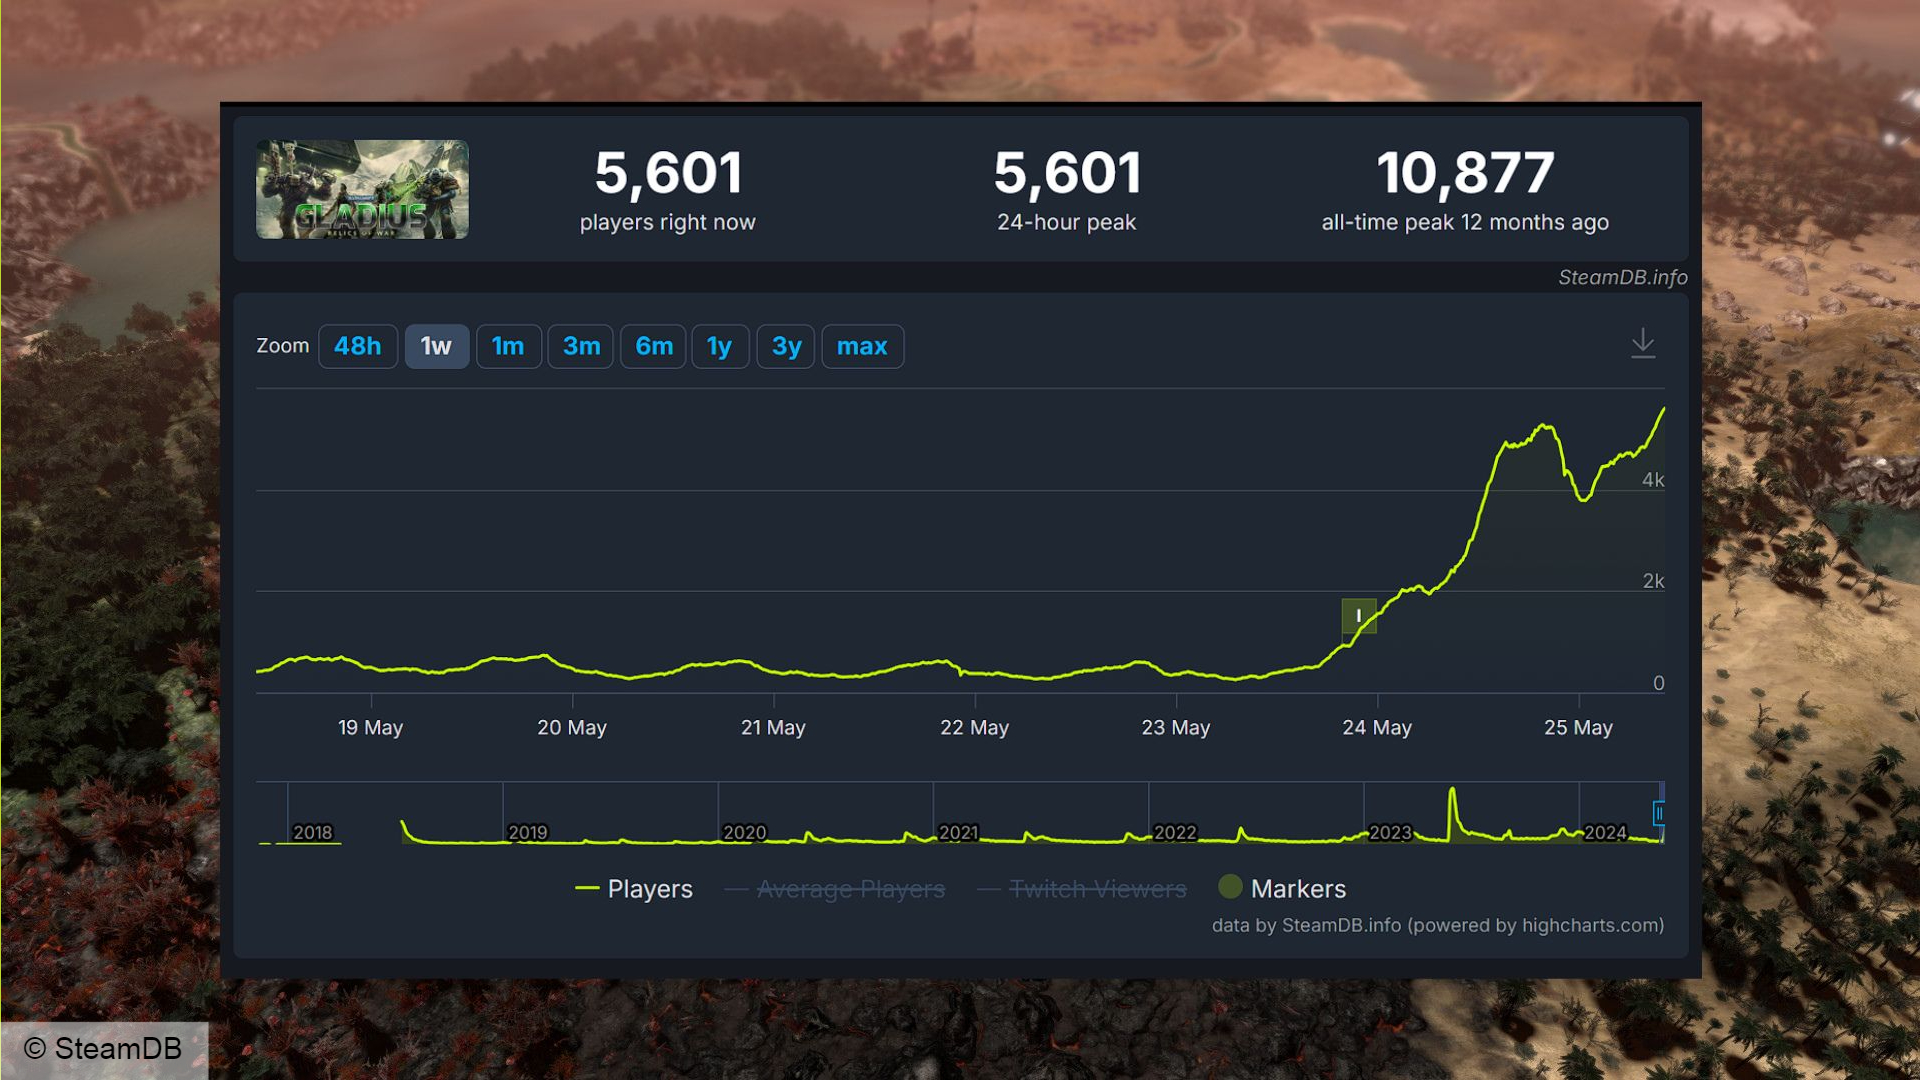 Juego de Steam gratuito Warhammer 40k Gladius: estadísticas de SteamDB en Gladius ahora